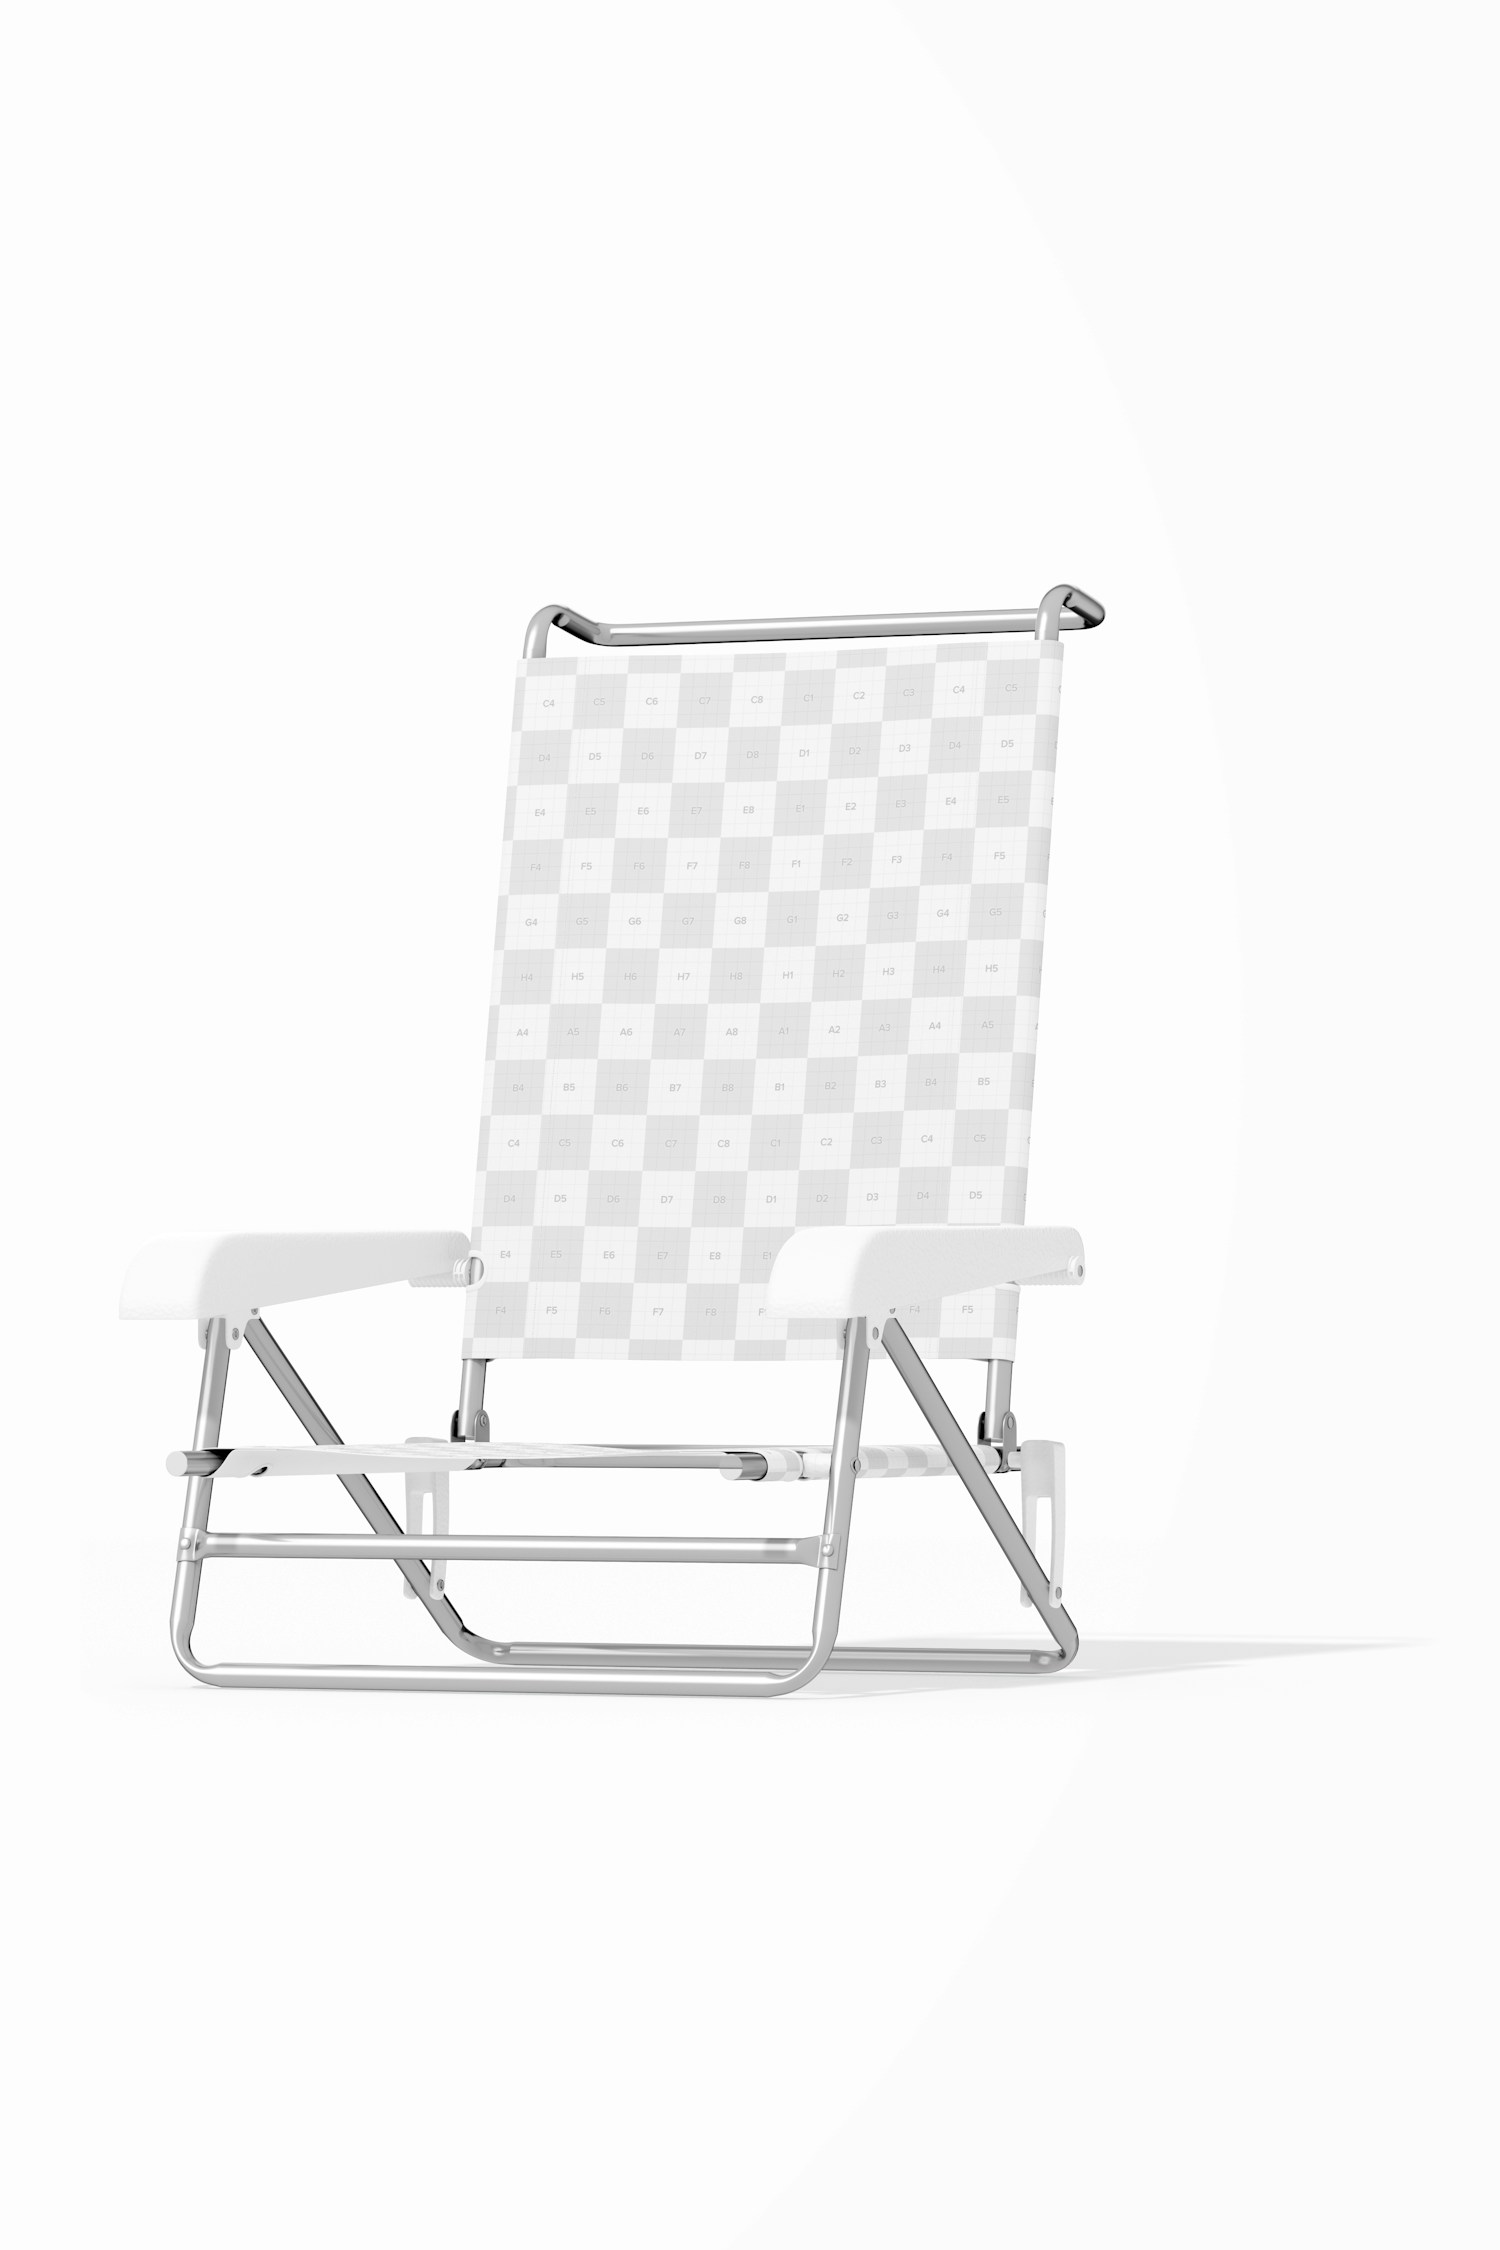 Flat Beach Chair Mockup